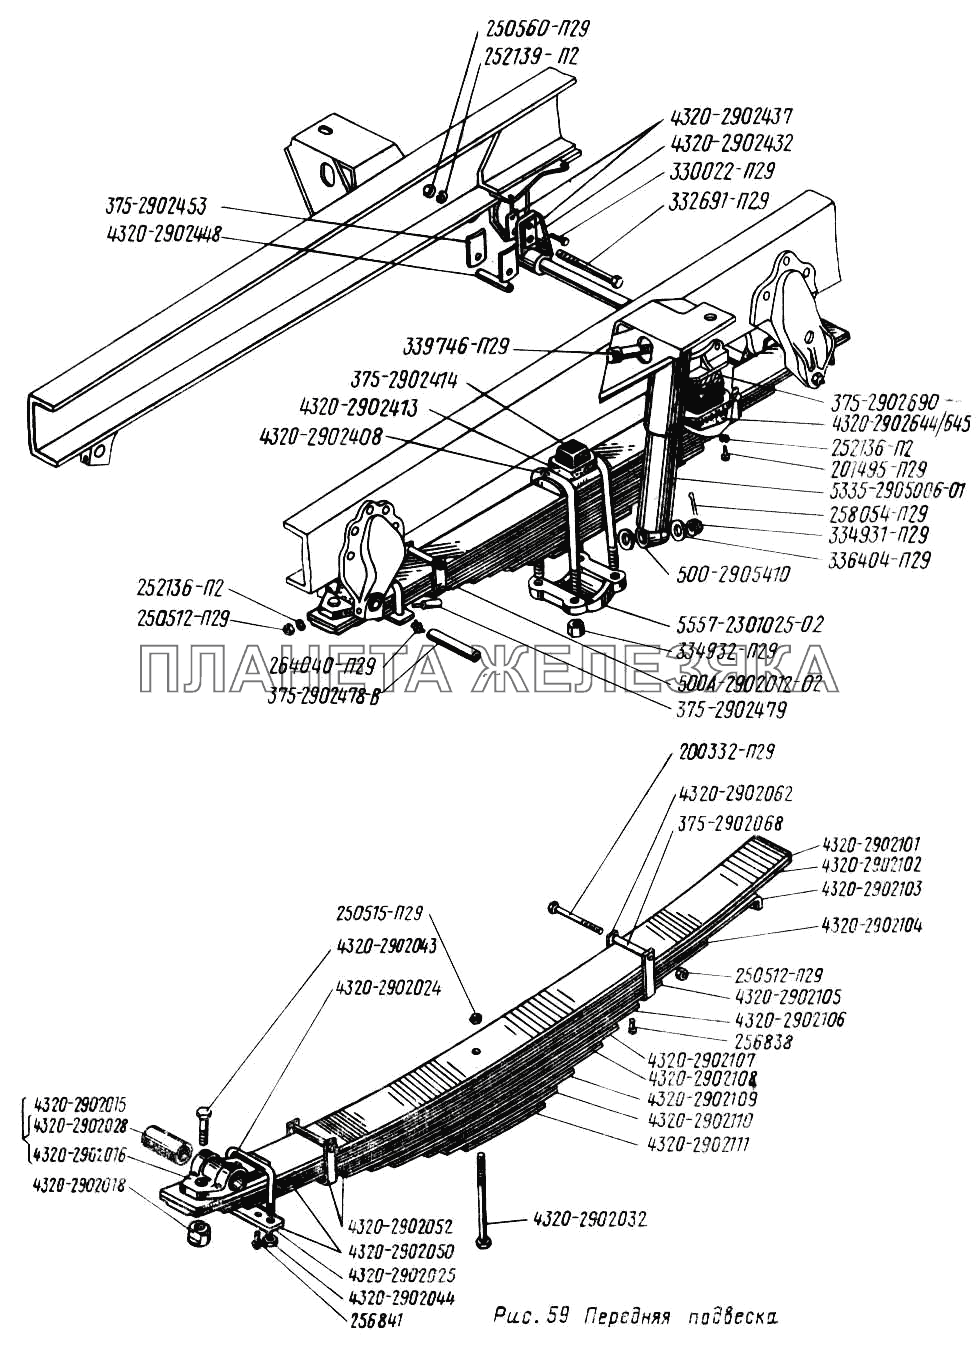 Передняя подвеска УРАЛ-43202